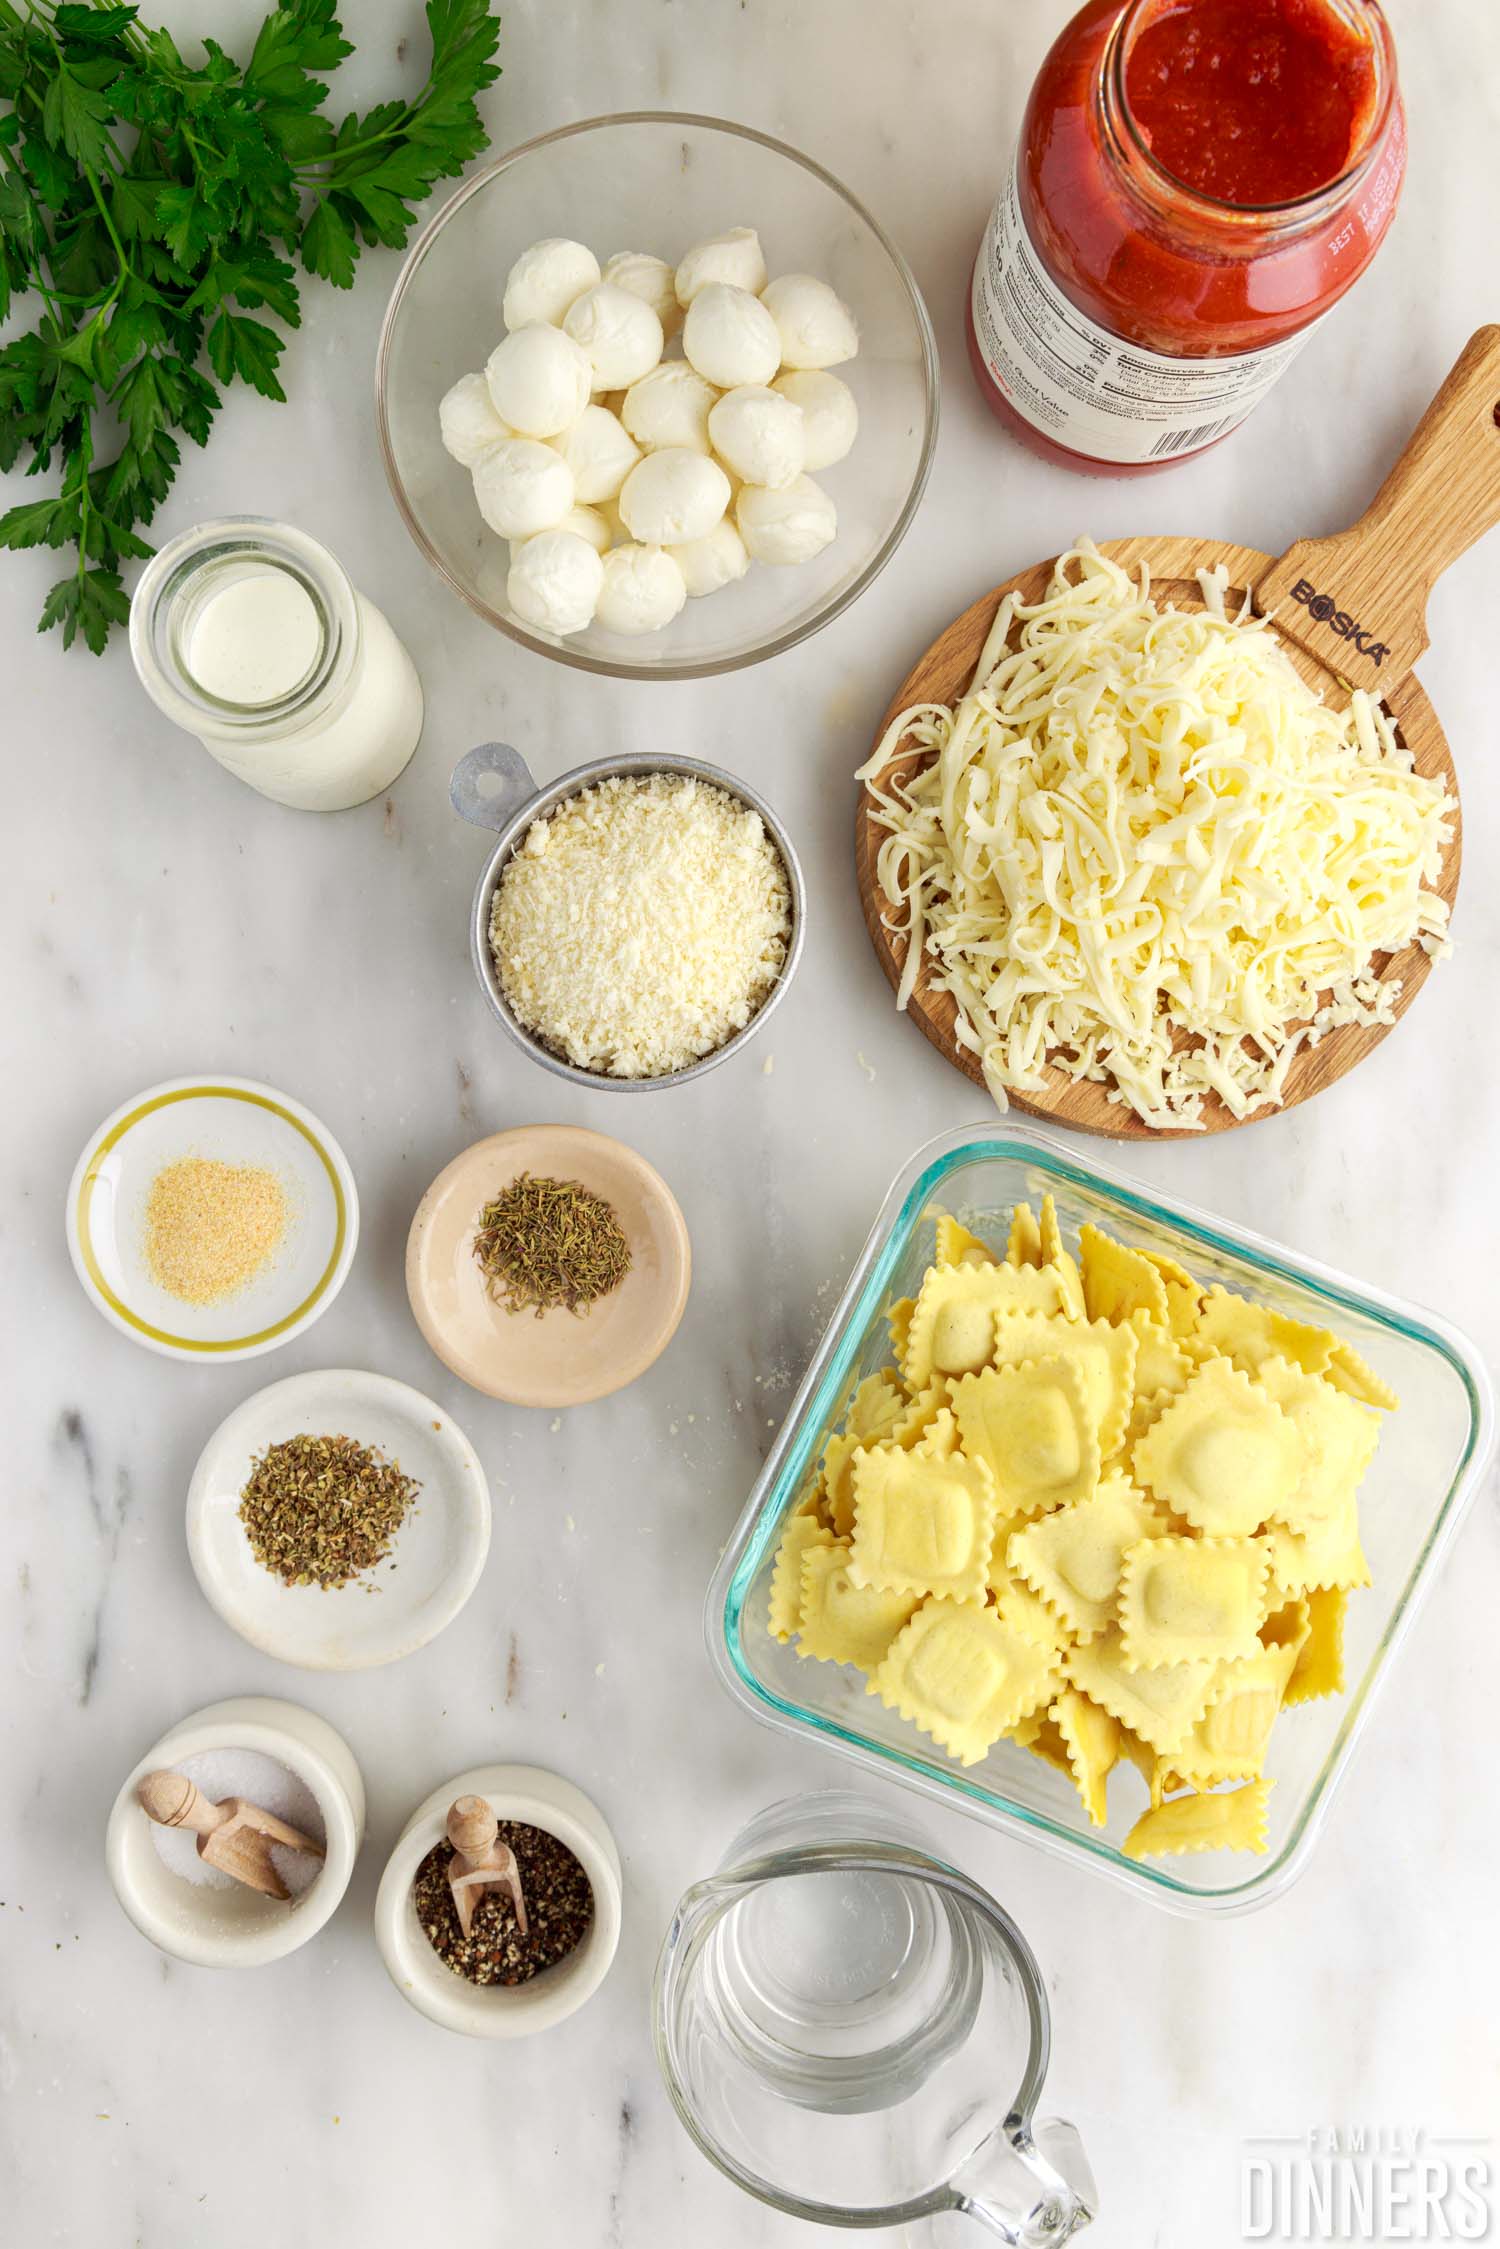 ingredients for making baked ravioli